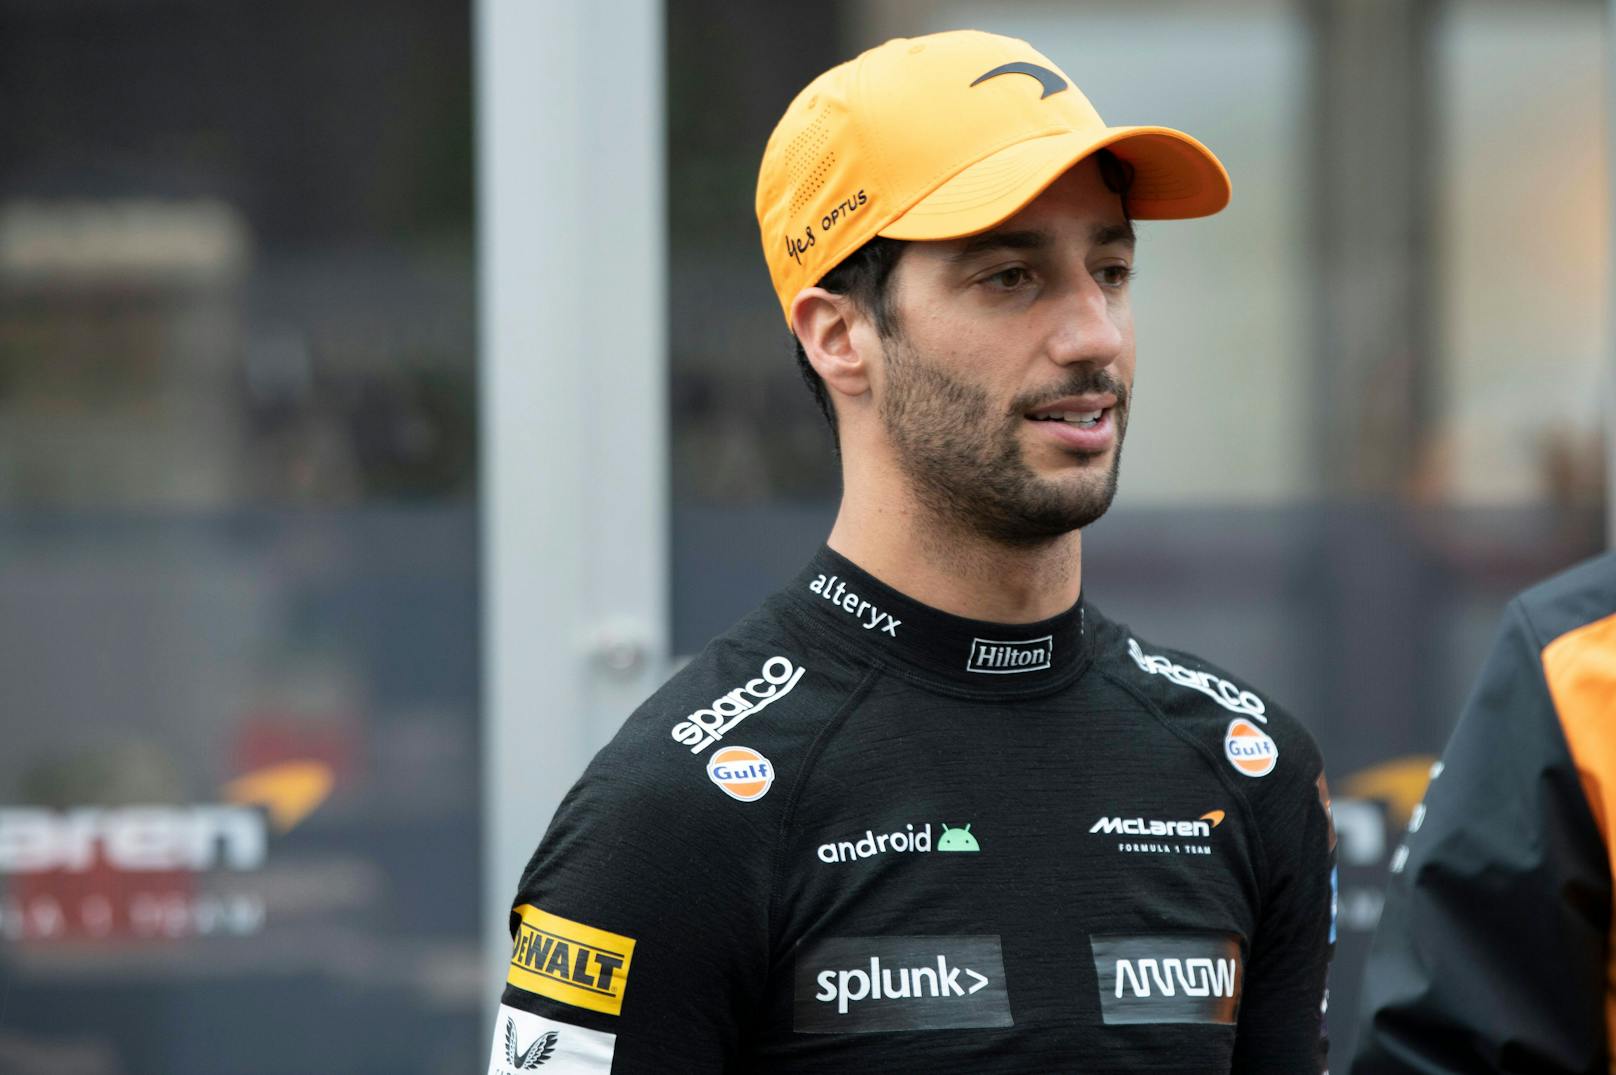 Kein Sensationsdeal: Ricciardo verkündet Zukunftsplan